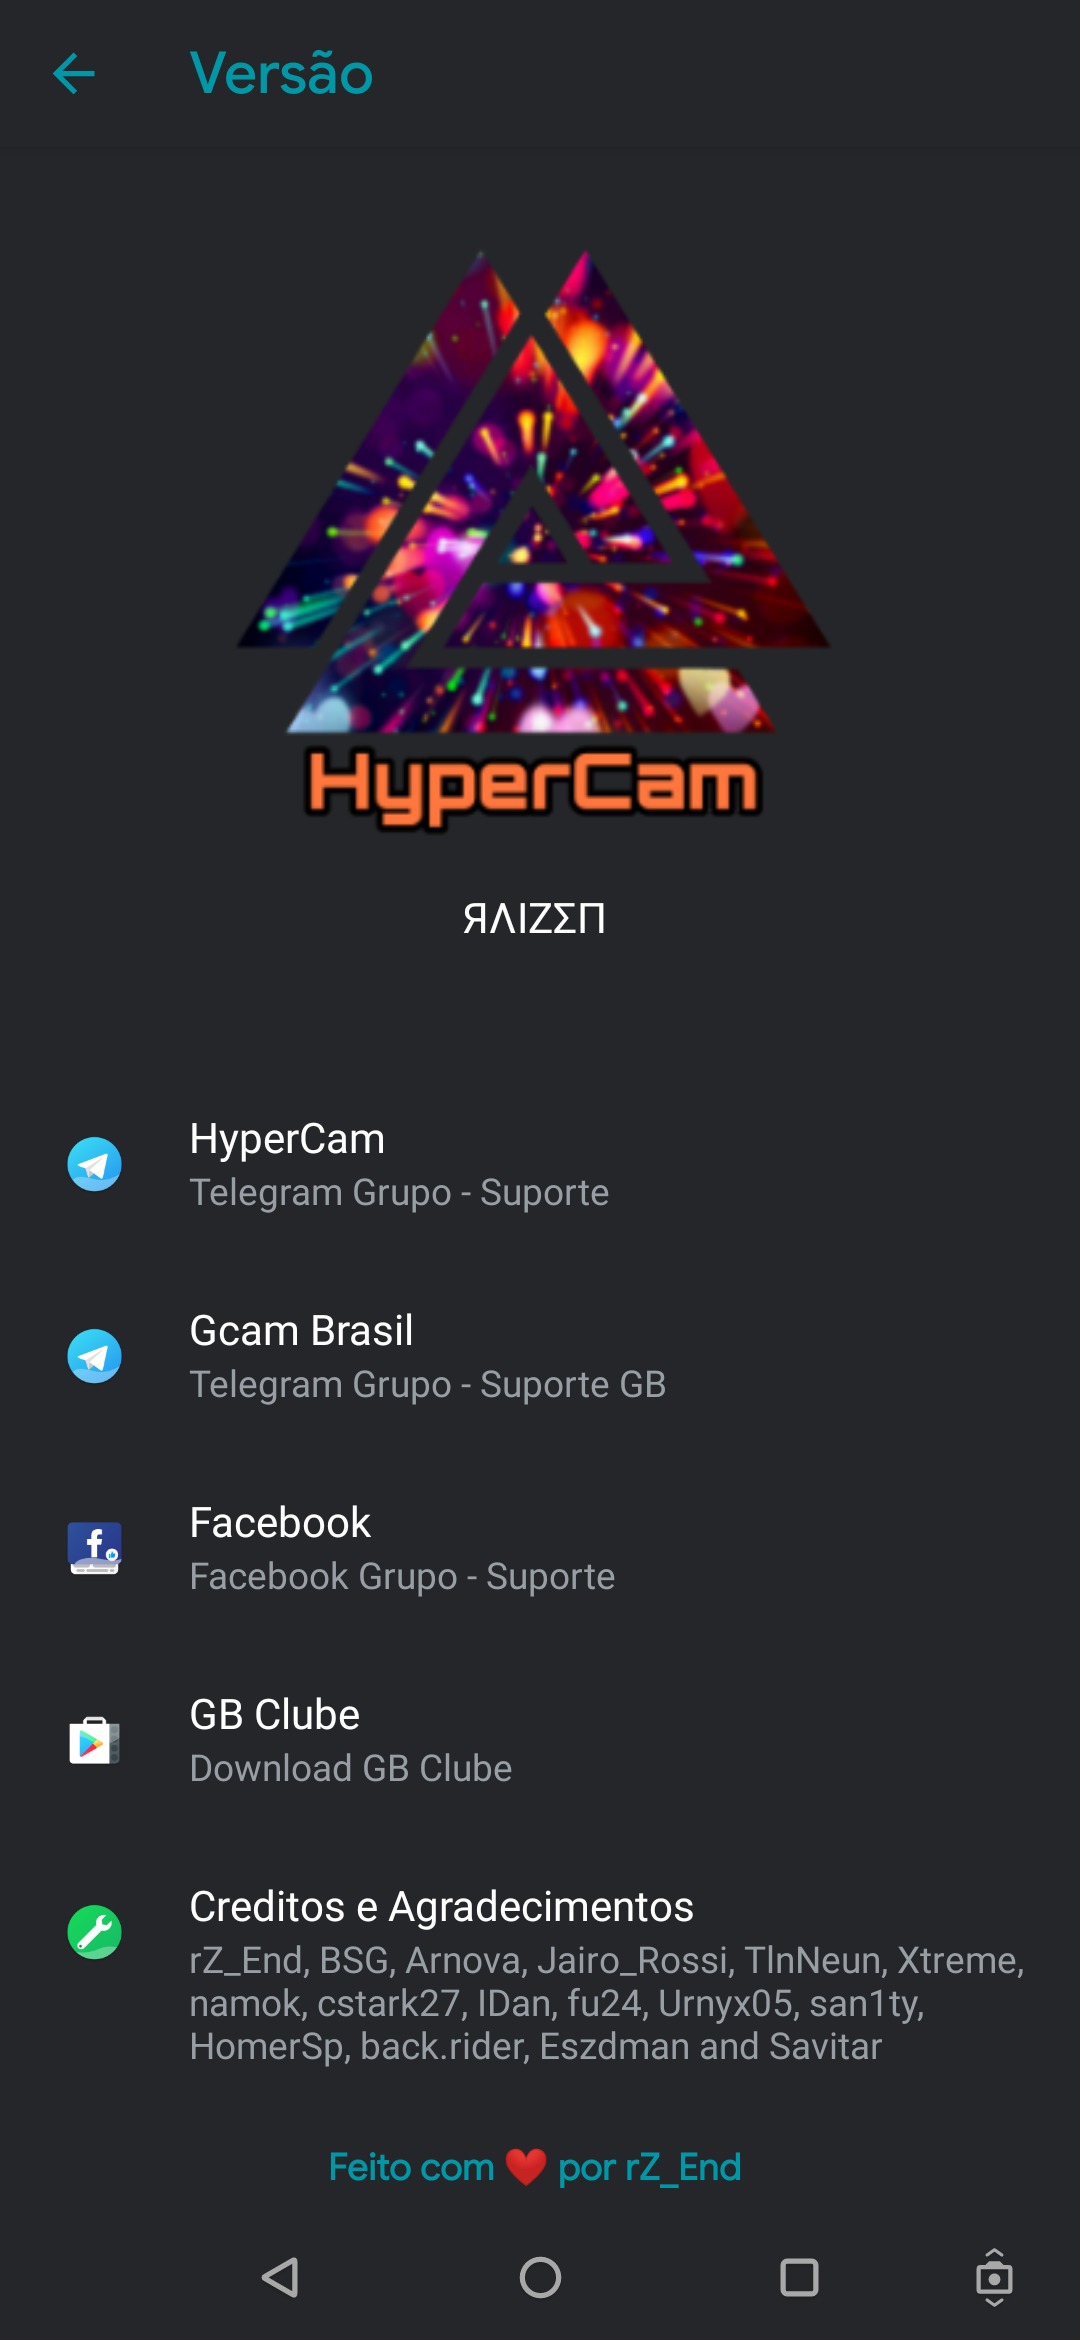 HyperCam Raizen